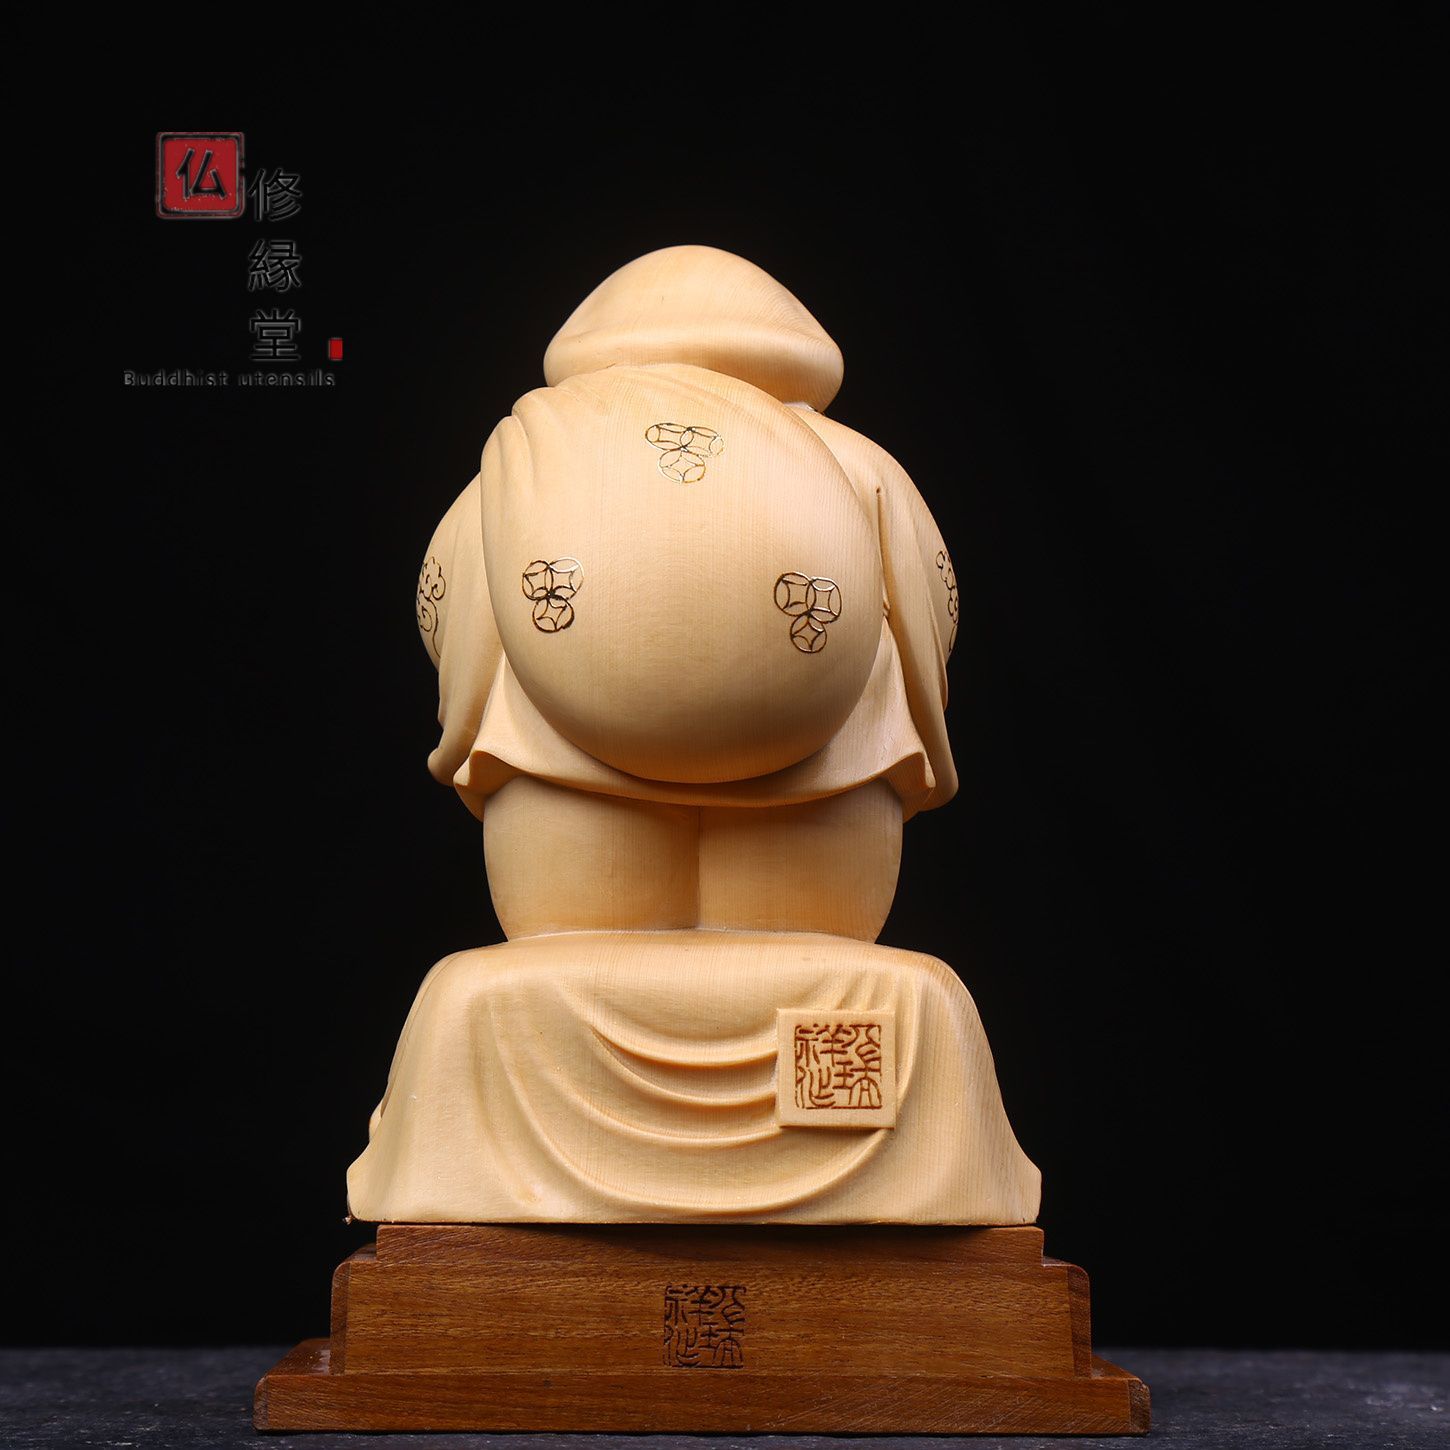 【修縁堂】新作 木彫り 仏像 福神大黒天立像 財神 檜材 仏教工芸 彫刻